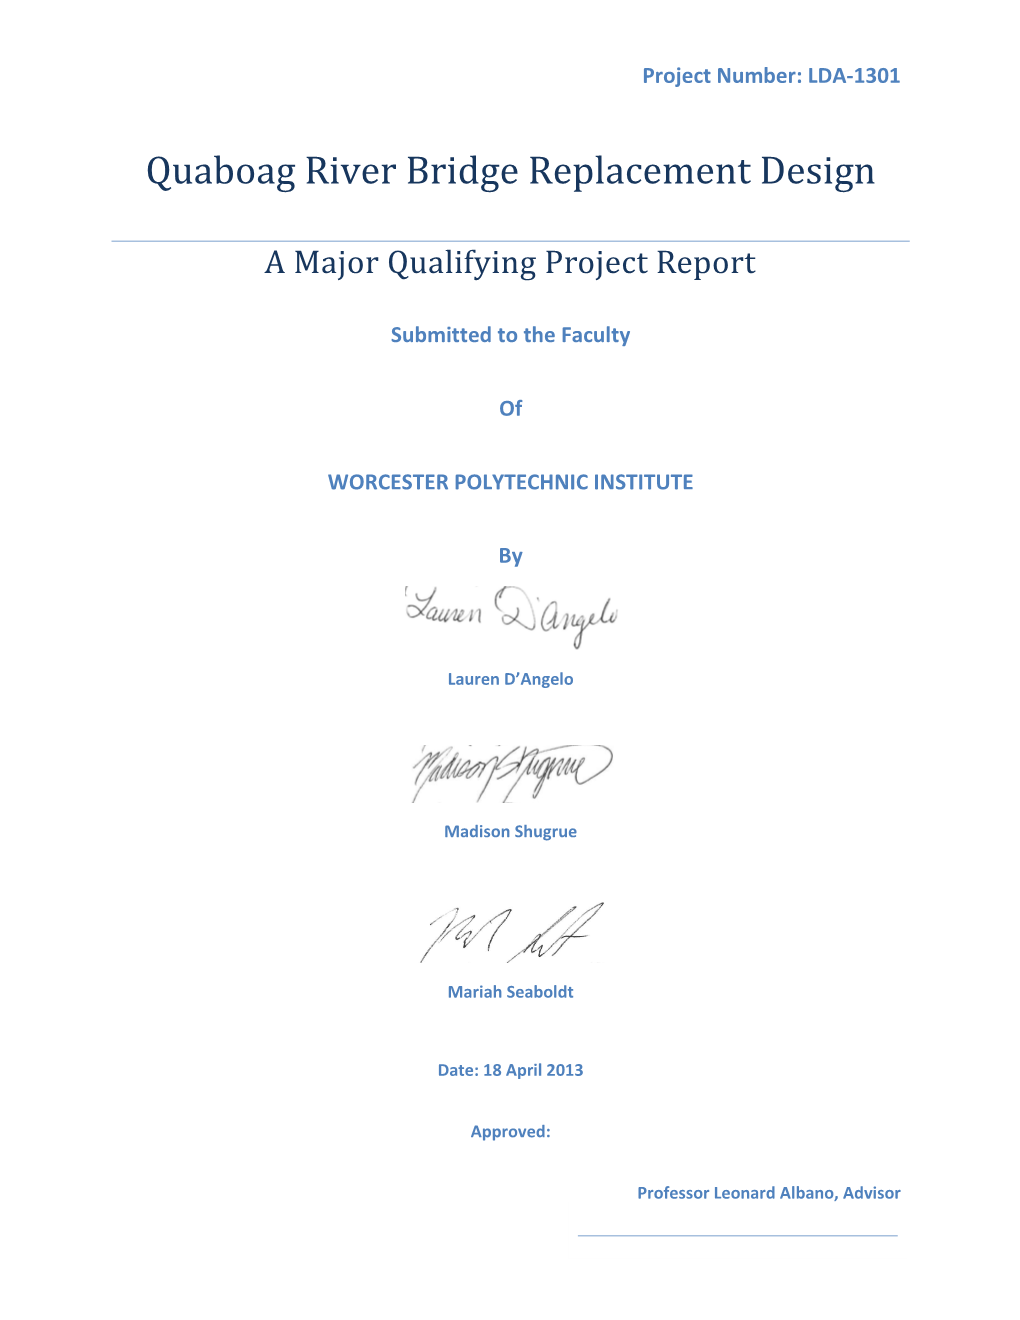 Quaboag River Bridge, Brookfield, MA